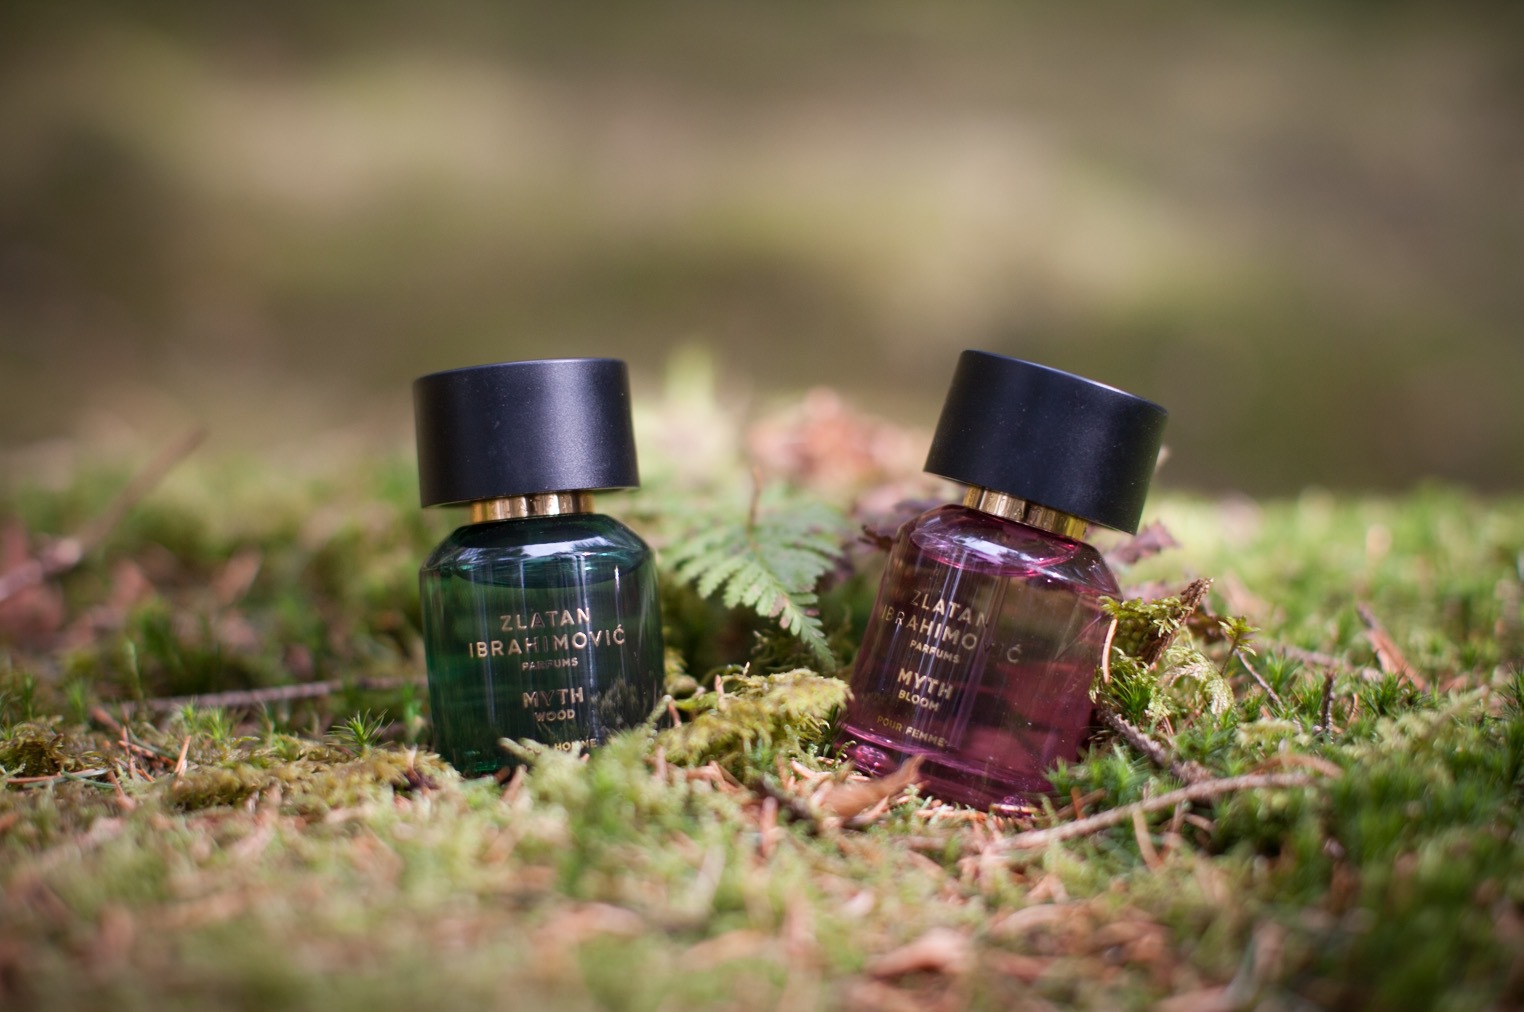 Nytt från Zlatan Ibrahimovic perfums ”Mtyh wood” och ”Myth Bloom” den här gången med inspiration från den skandinaviska floran.